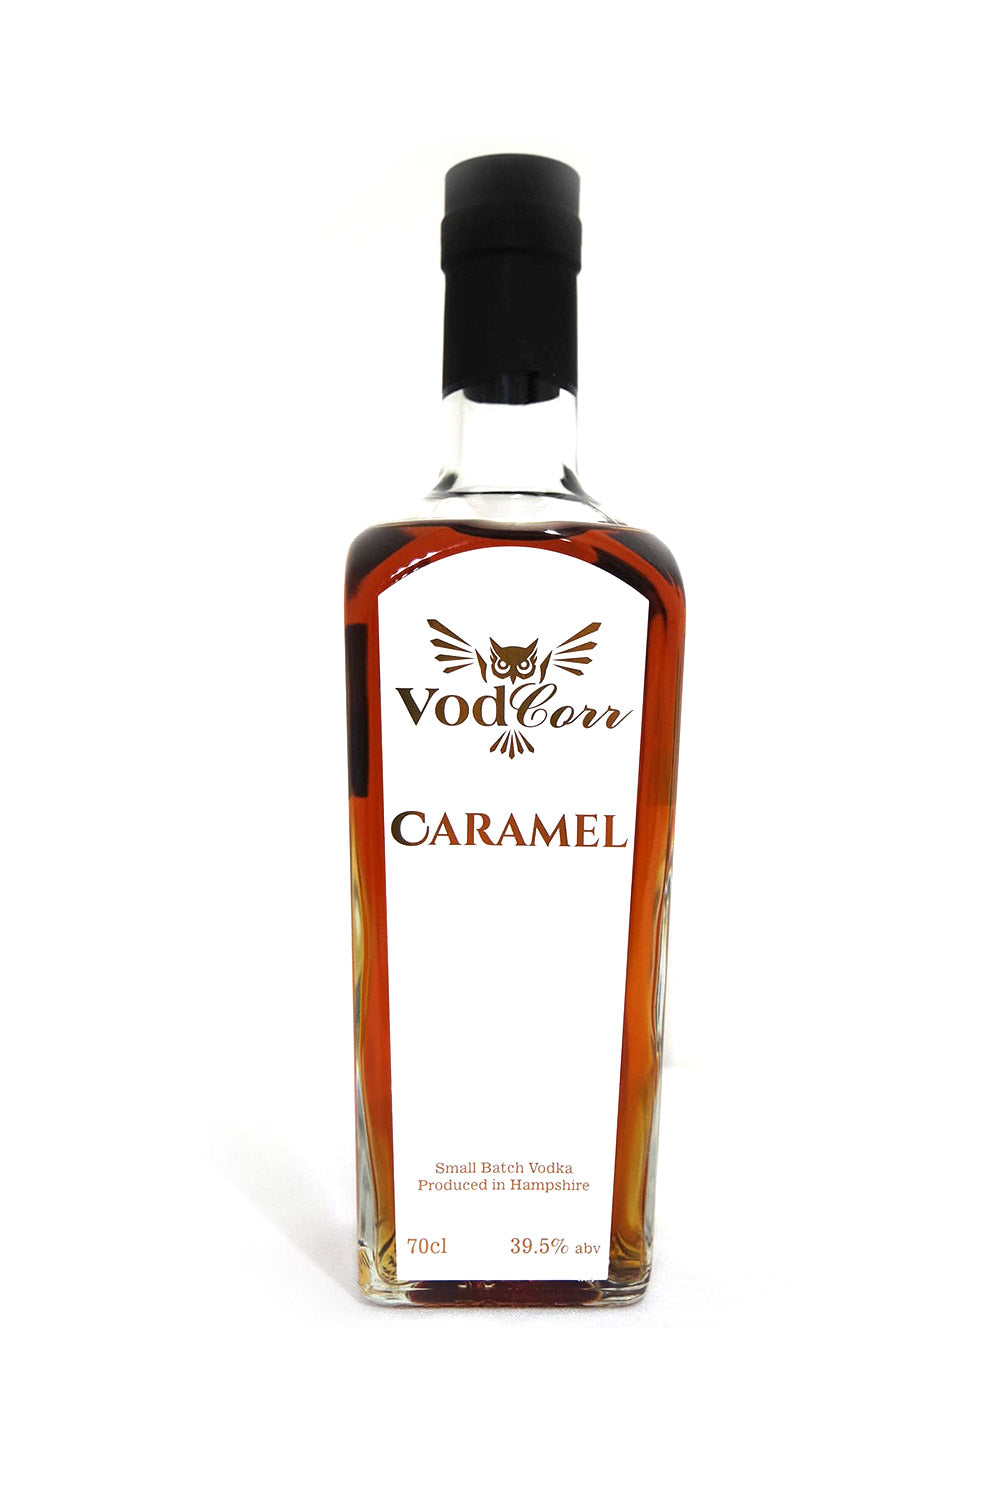 VodCorr Caramel Vodka